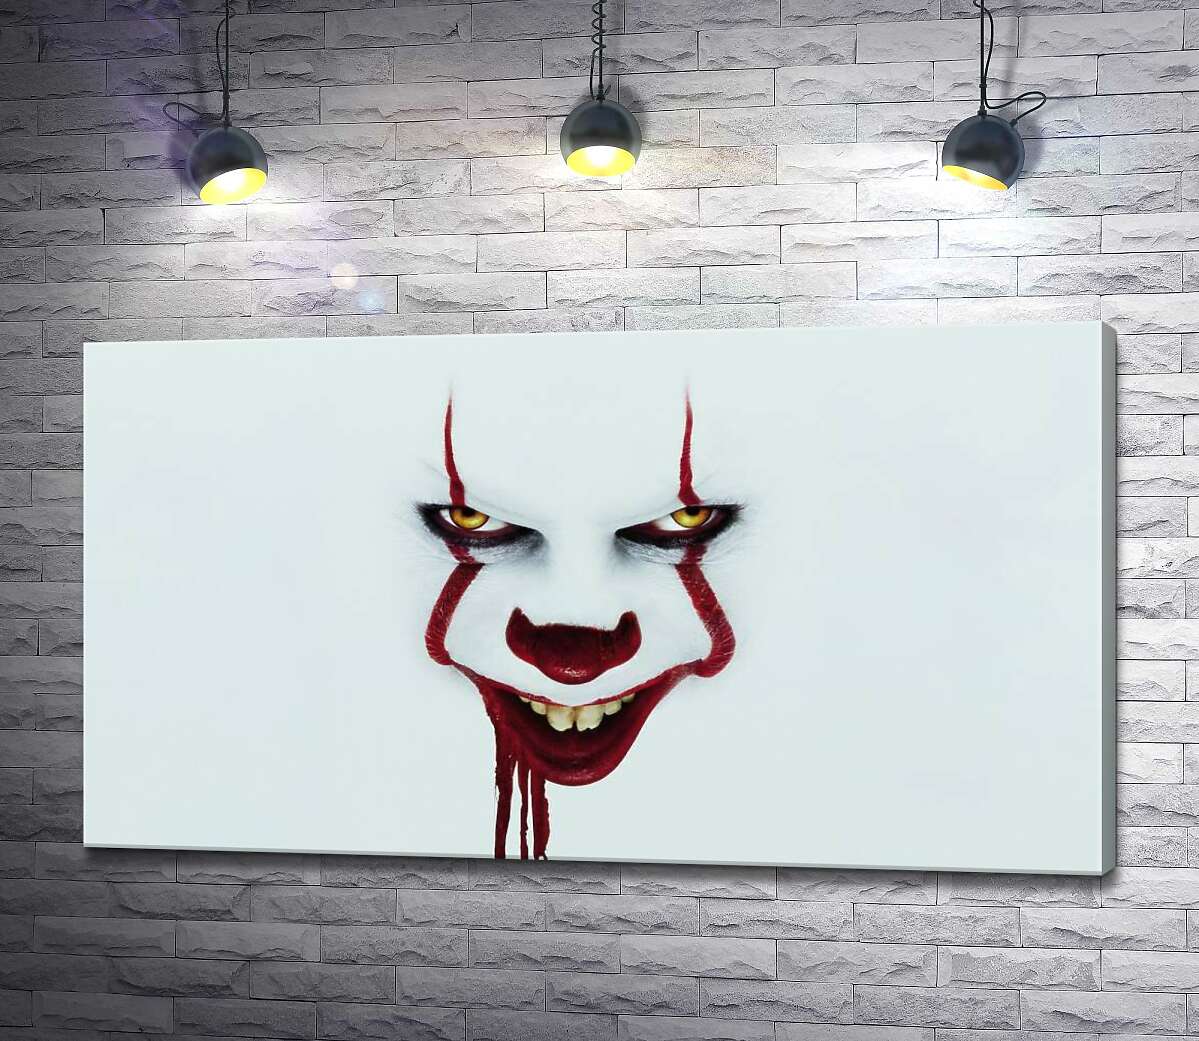 картина Ужасающая улыбка клоуна-убийцы Пеннивайза (Pennywise) – героя фильма ужасов "Оно" (It)